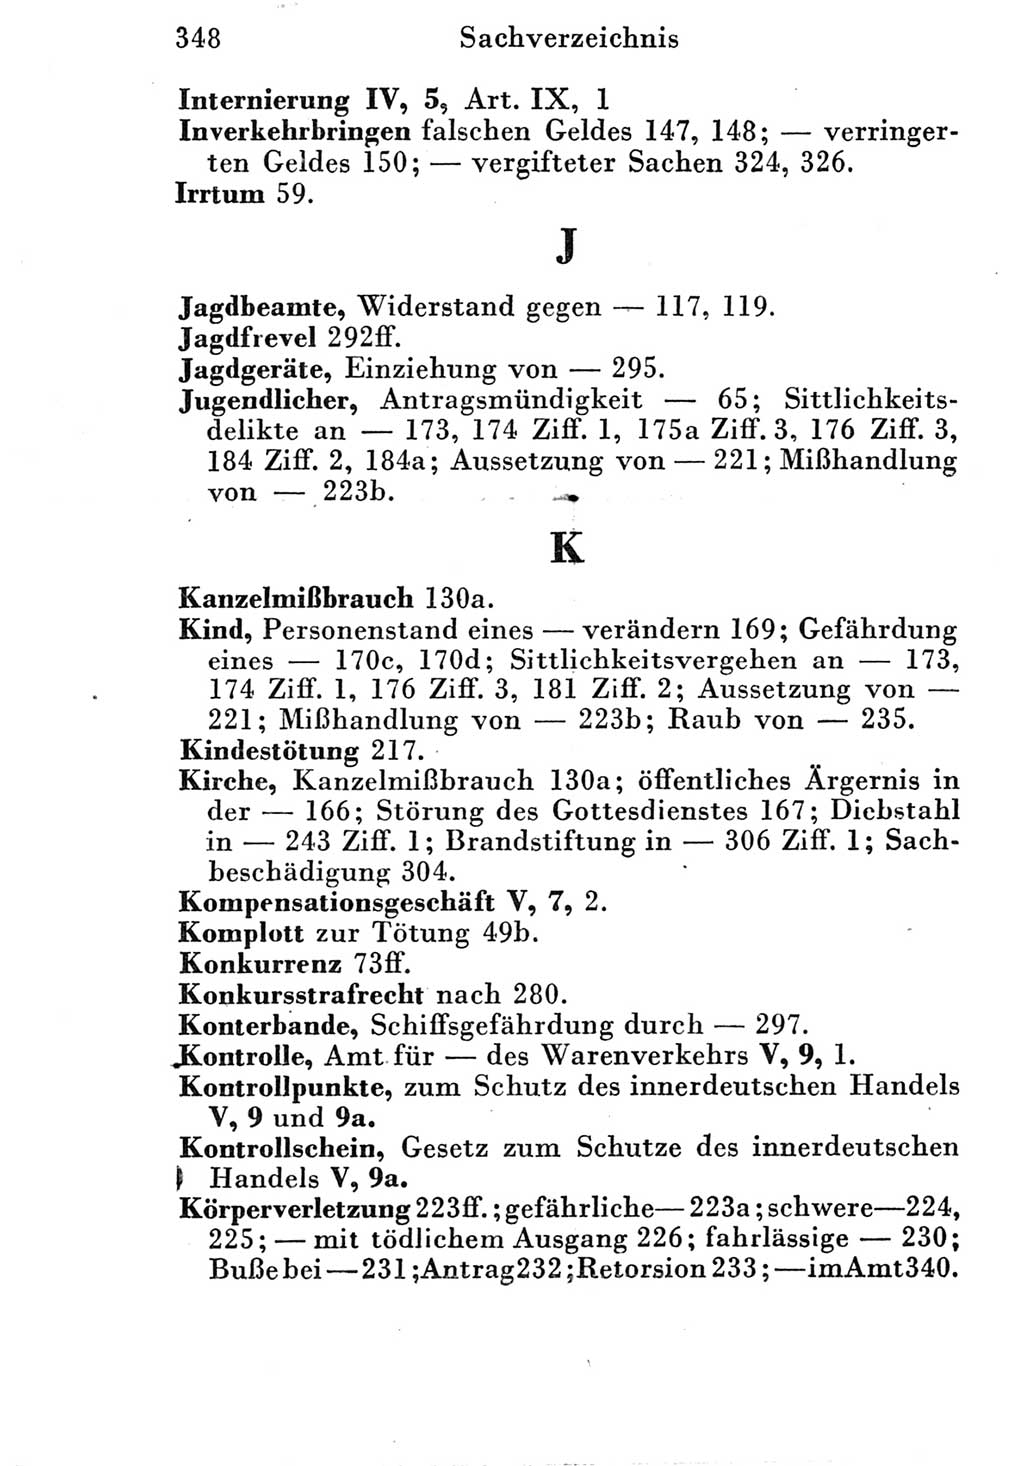 Strafgesetzbuch (StGB) und andere Strafgesetze [Deutsche Demokratische Republik (DDR)] 1951, Seite 348 (StGB Strafges. DDR 1951, S. 348)